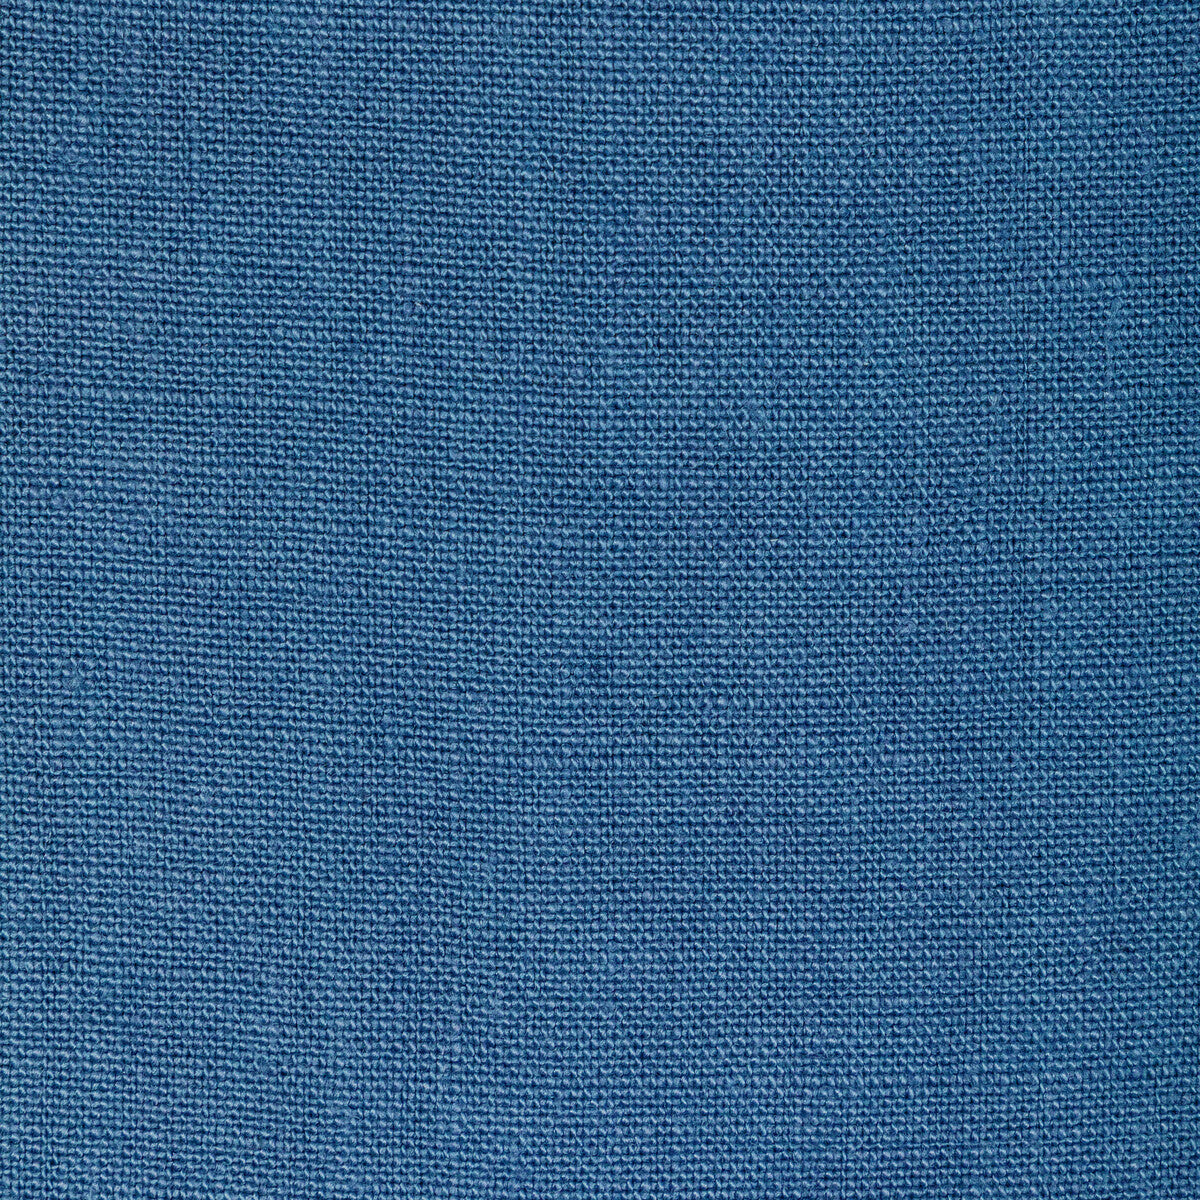 Kravet Basics fabric in 36332-5 color - pattern 36332.5.0 - by Kravet Basics